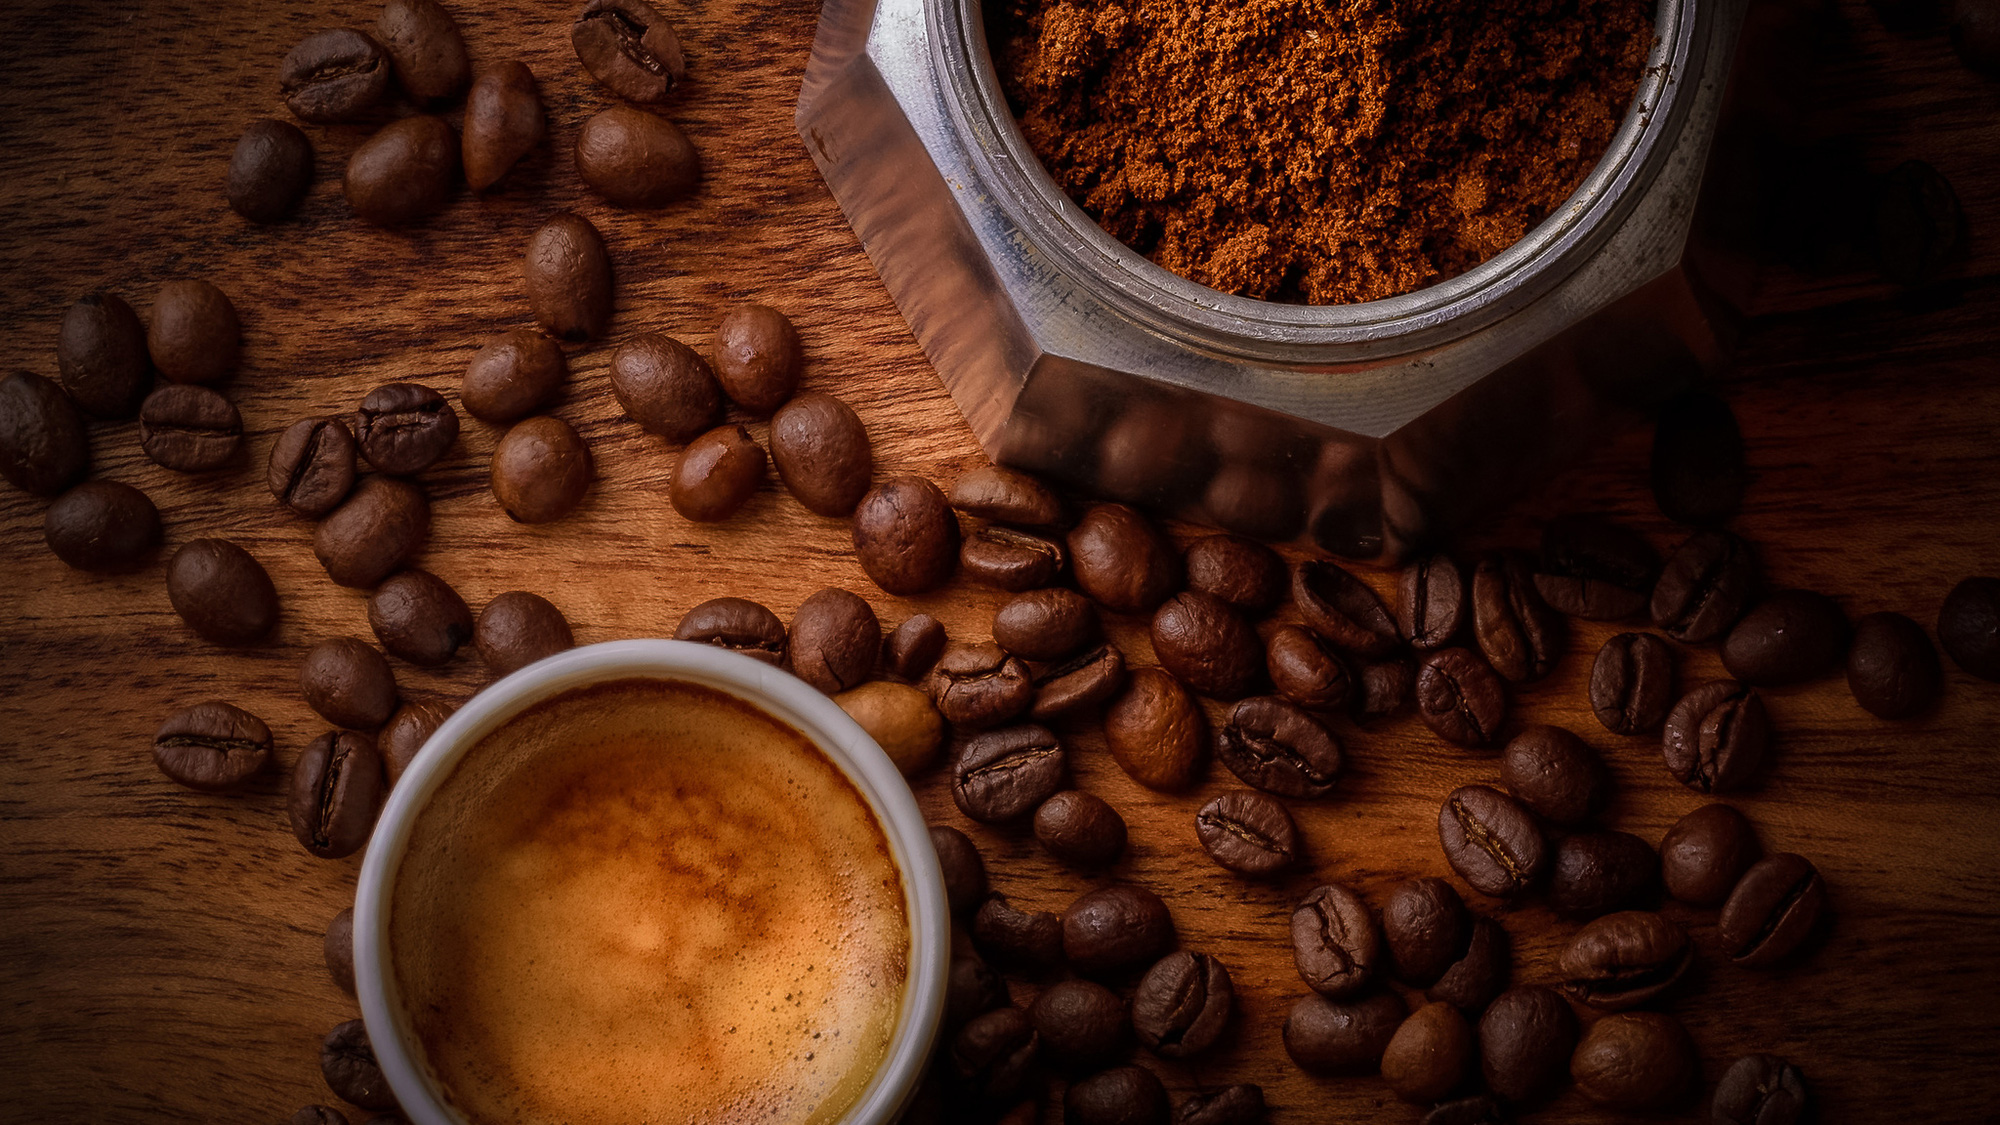 Thưởng thức ly cà phê đậm đà và thơm ngon là trải nghiệm thú vị cho mỗi ngày. Hãy xem hình ảnh để cảm nhận được sự dễ chịu khi nhâm nhi từng ngụm cà phê đầy hương vị.